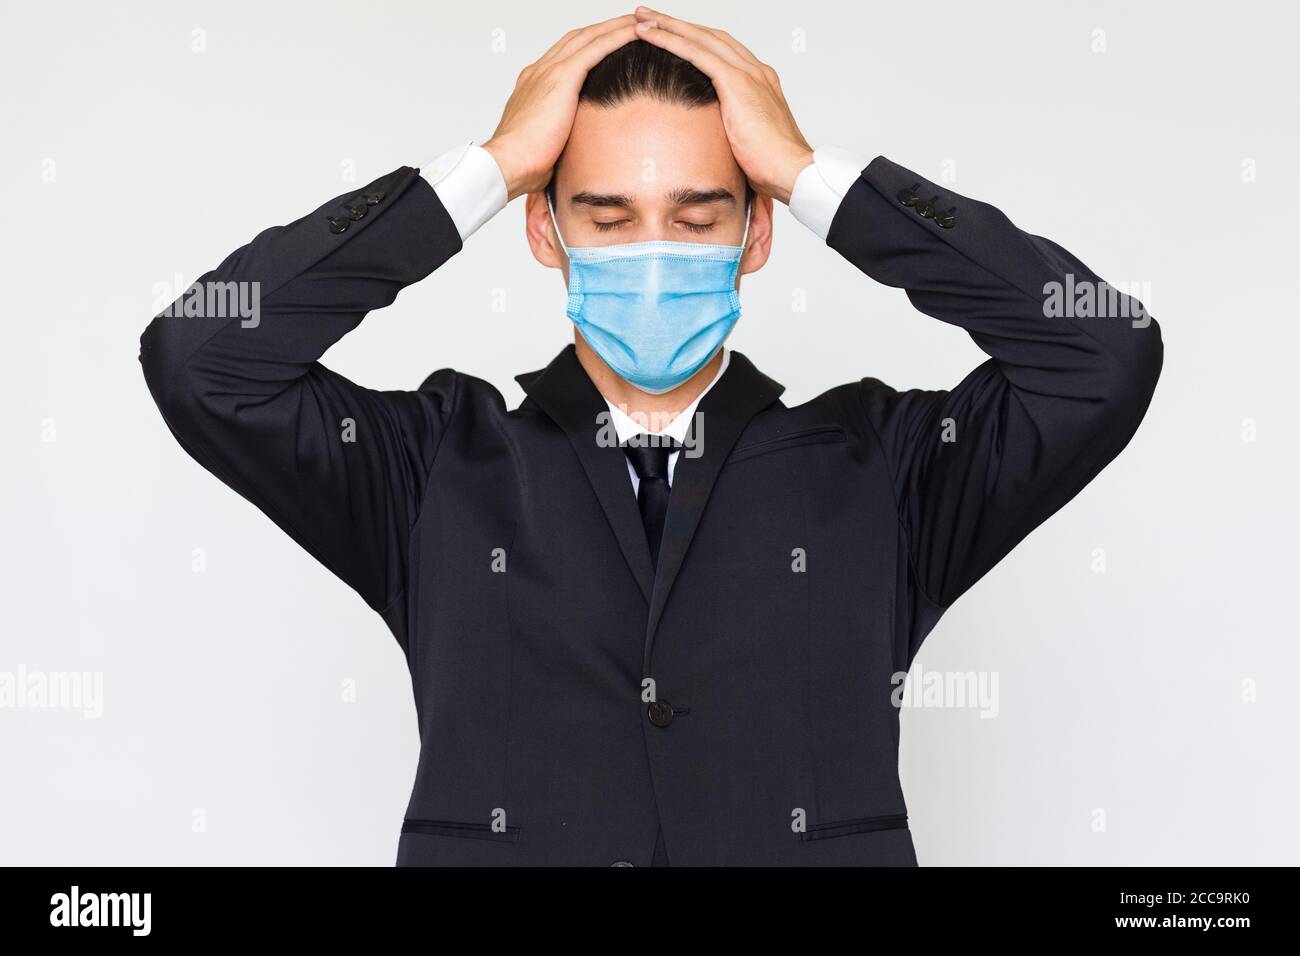 Pressione di lavoro e overworked - uomo d'affari stressato con le mani sulla testa che indossa una maschera medica del viso. Isolato su uno sfondo bianco. Foto Stock